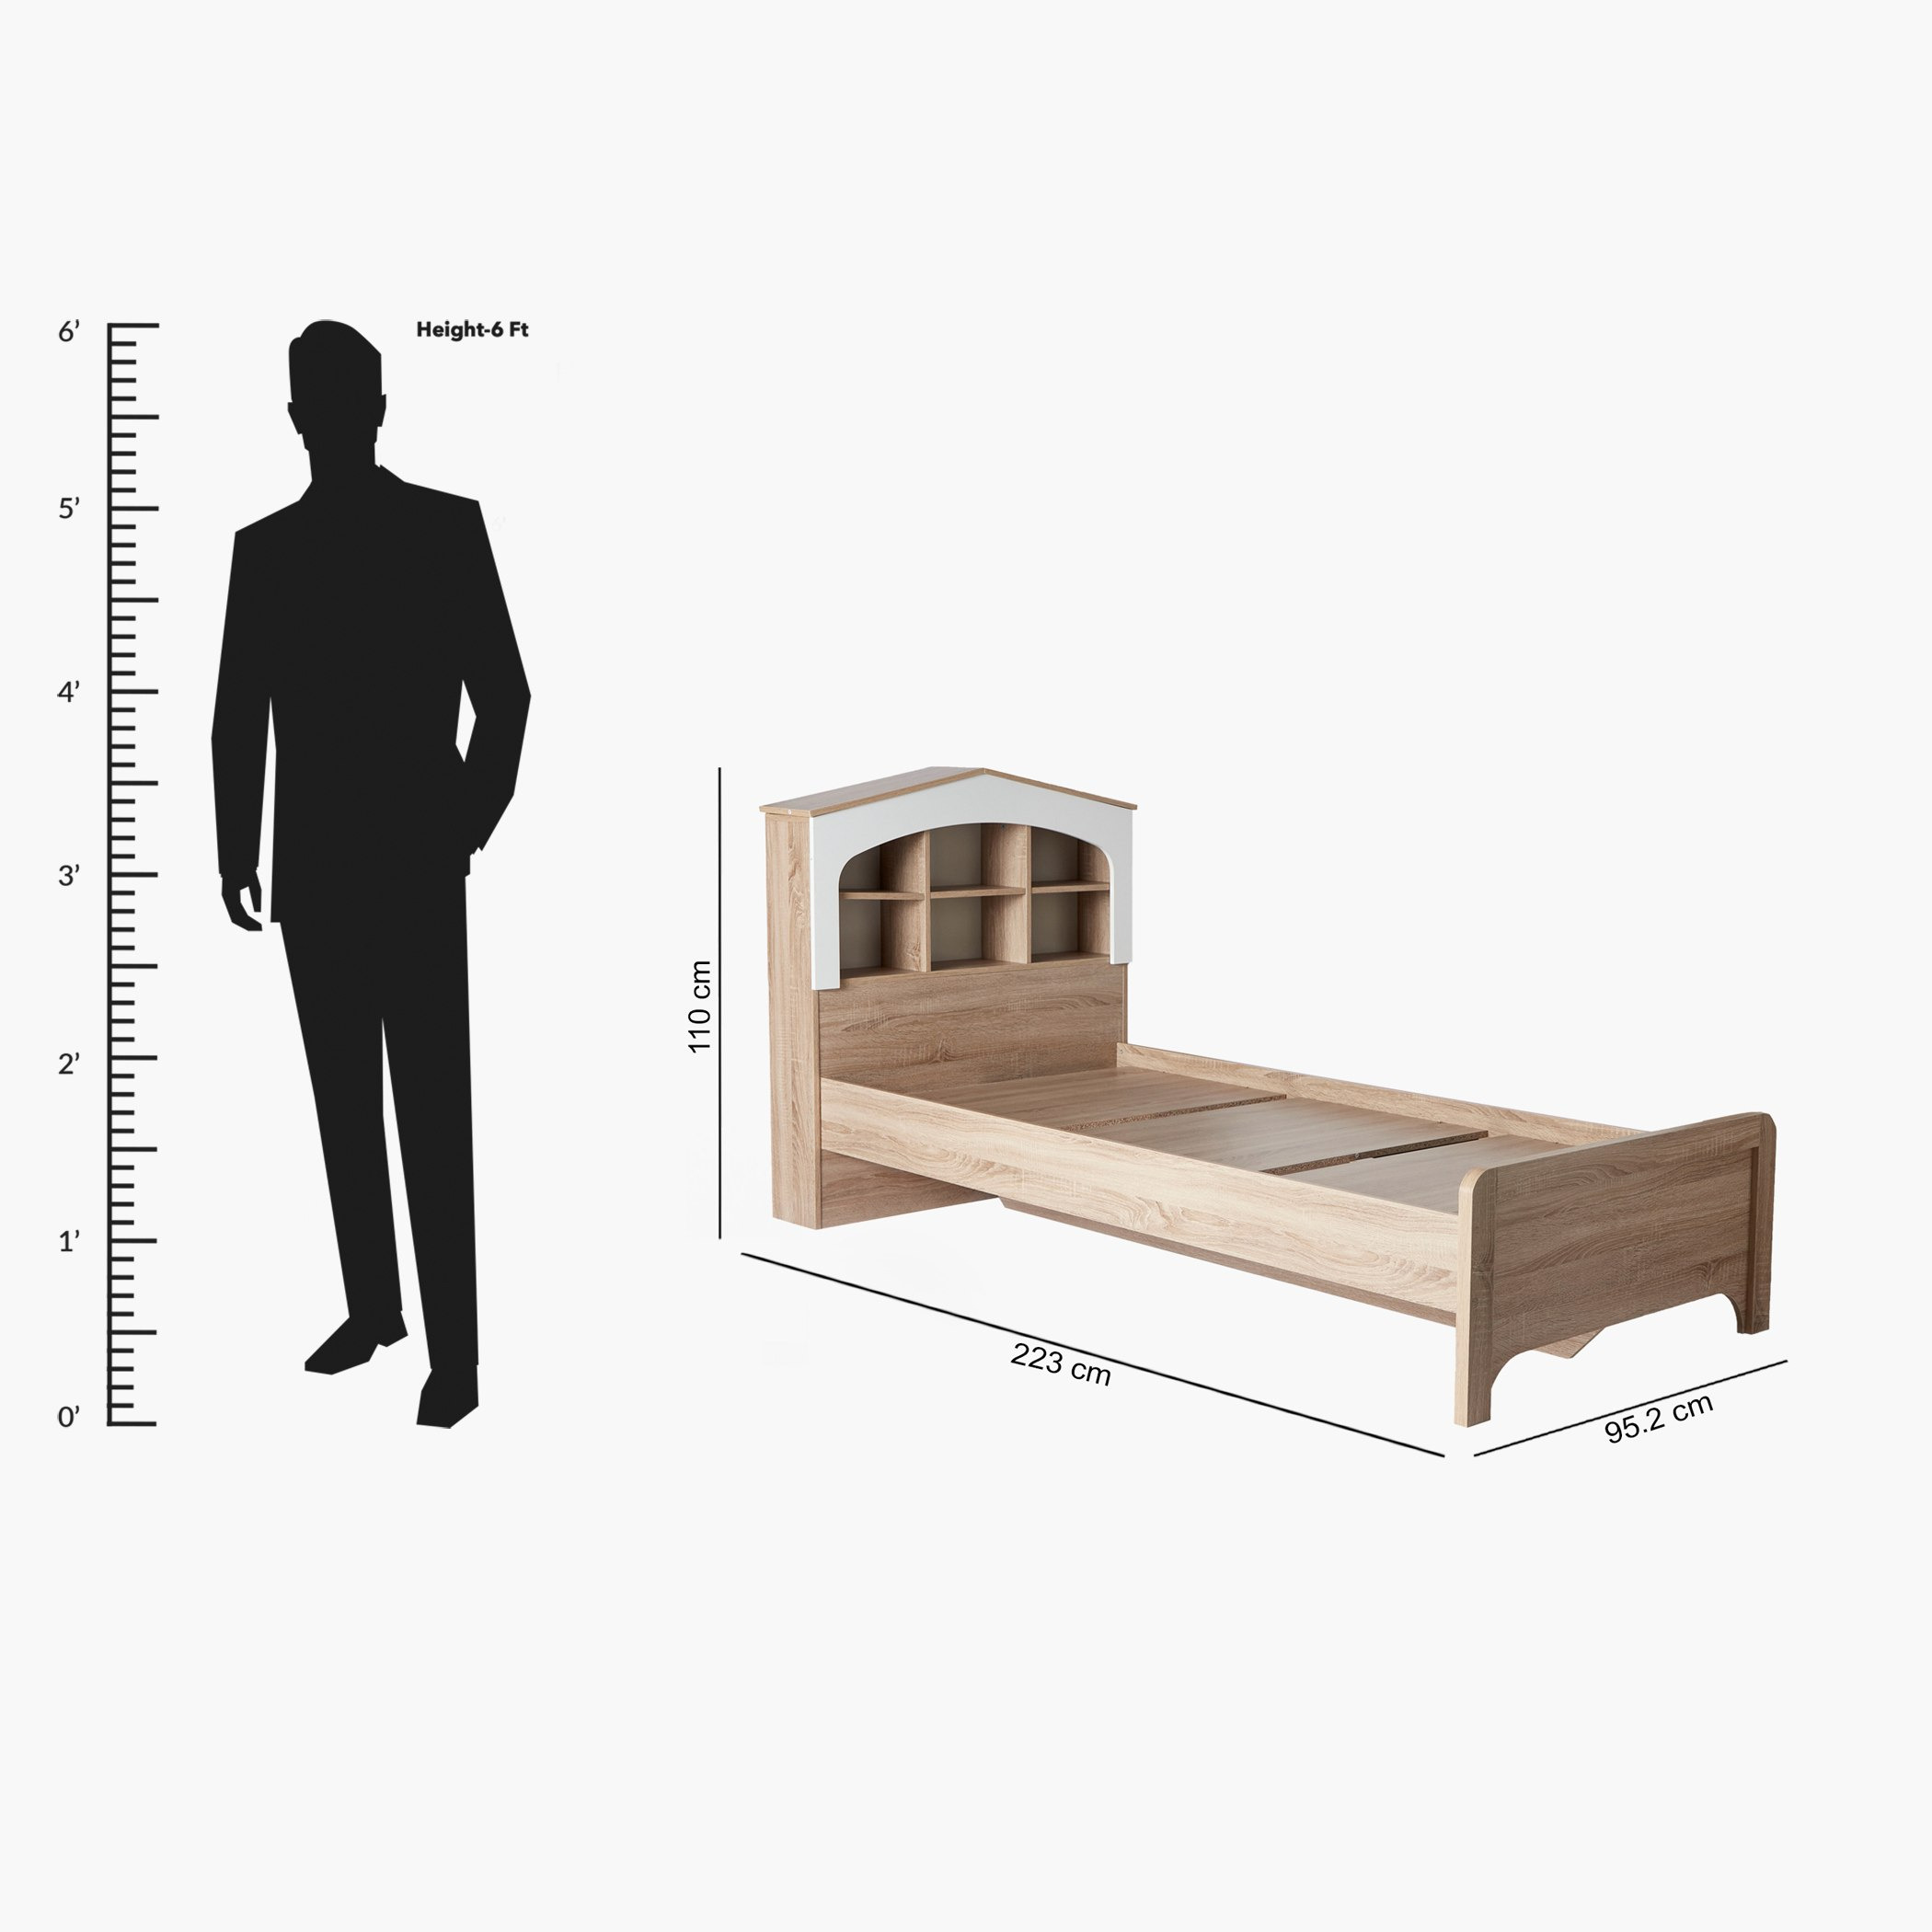 Buy My House Single Bed - 90x200 cm Online in UAE | Homebox